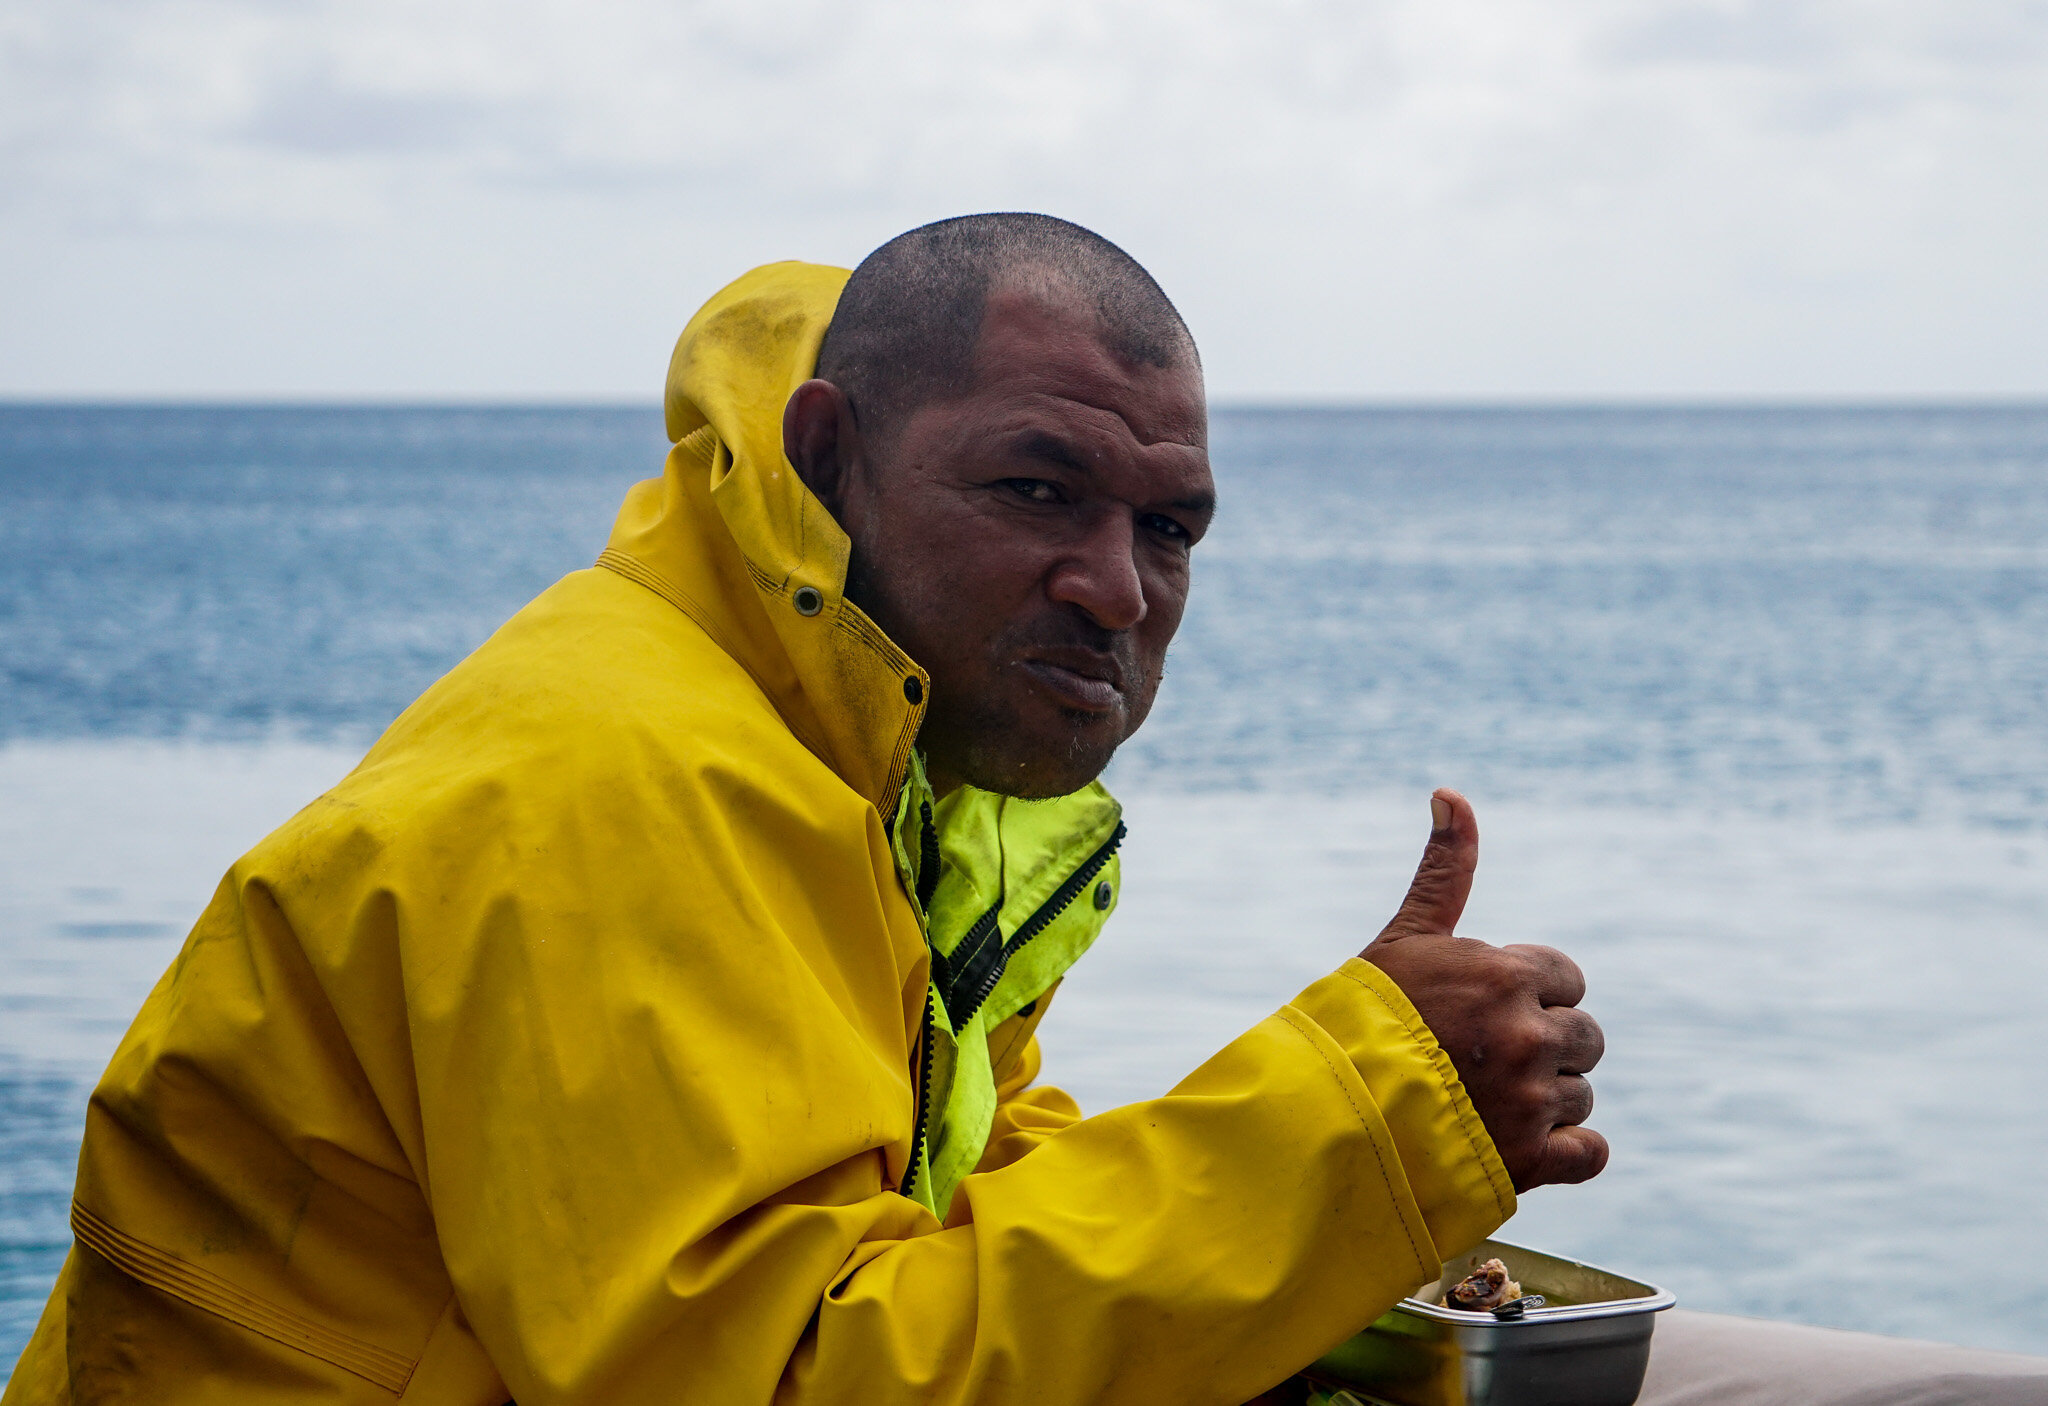 Our skipper, Tomasi, in Tonga